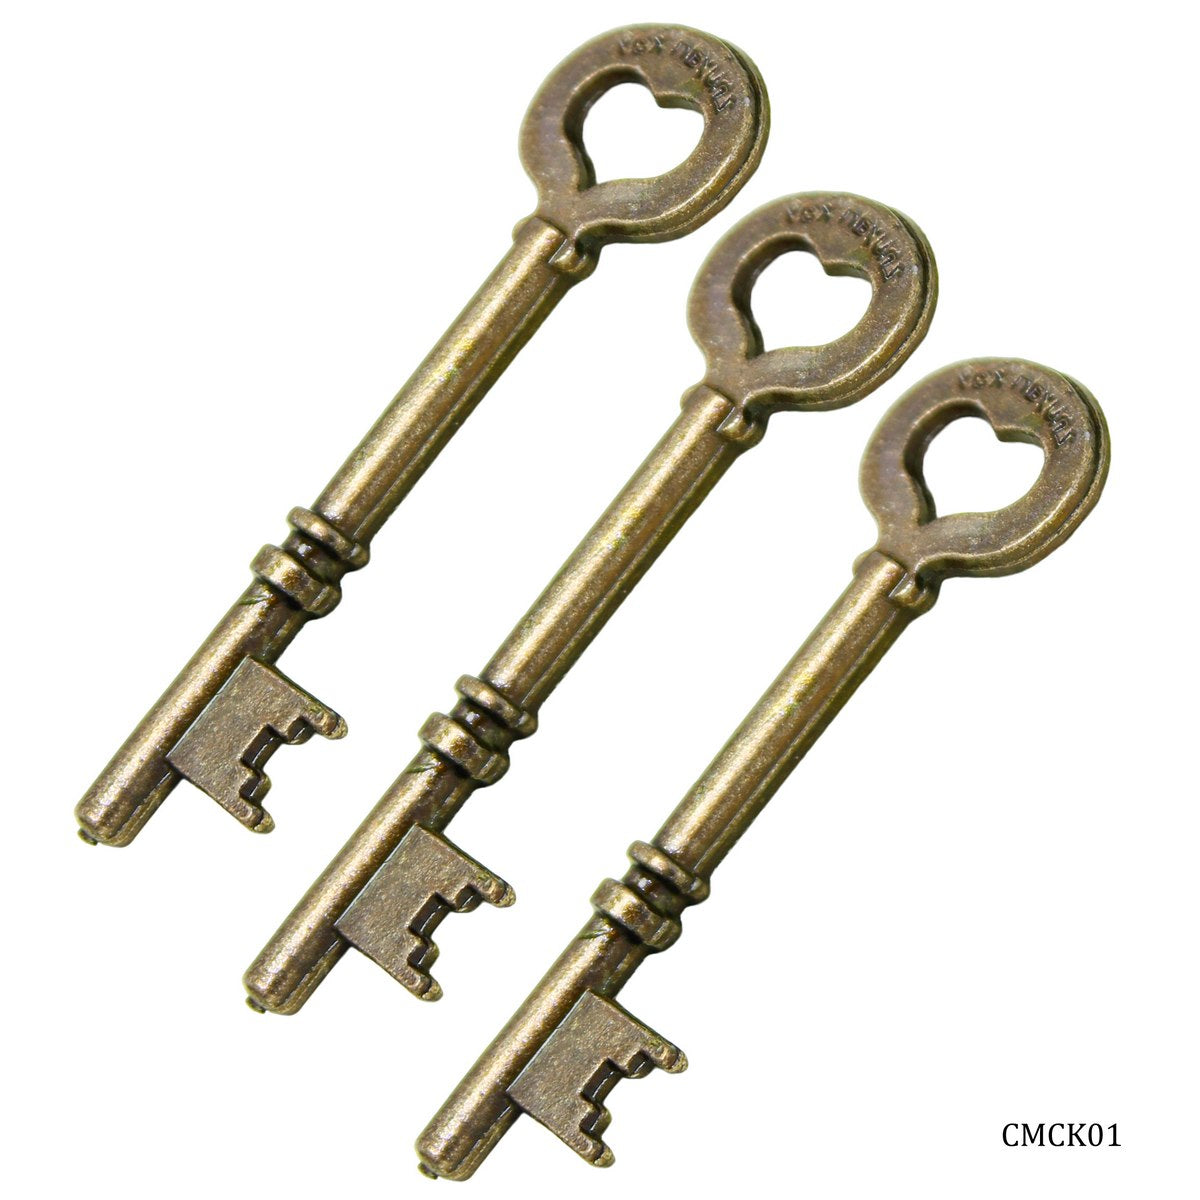 jags-mumbai Pendant Craft Metal Charms Key Medium 3pcs CMCK01